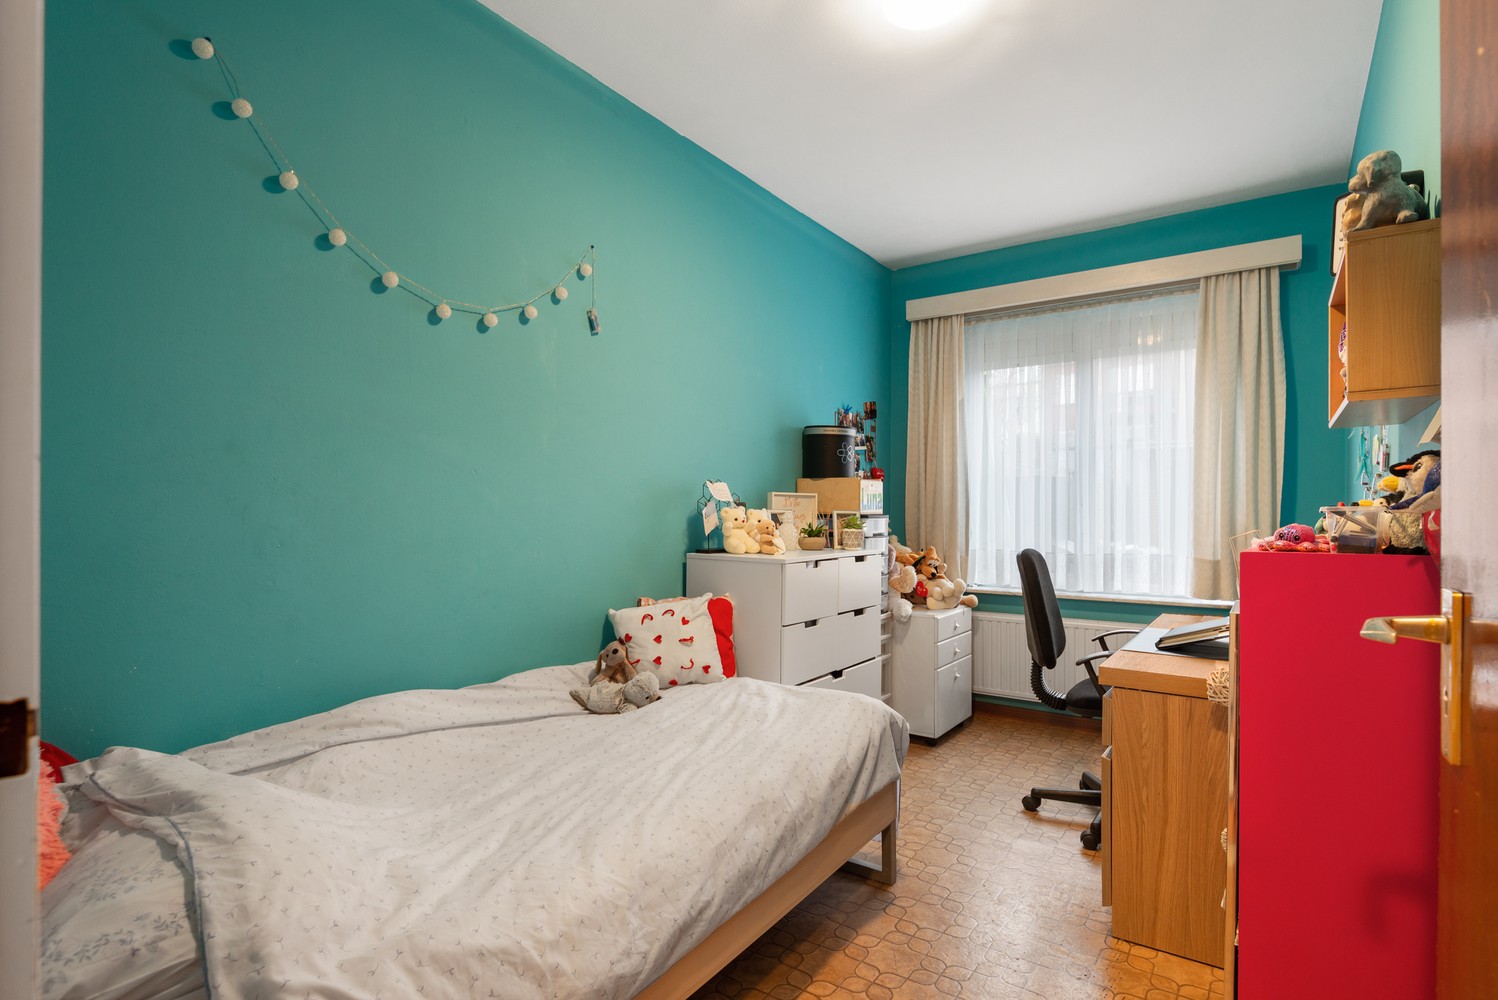 Gelijkvloers appartement met 2 slaapkamers, inclusief garage in Borsbeek! afbeelding 11